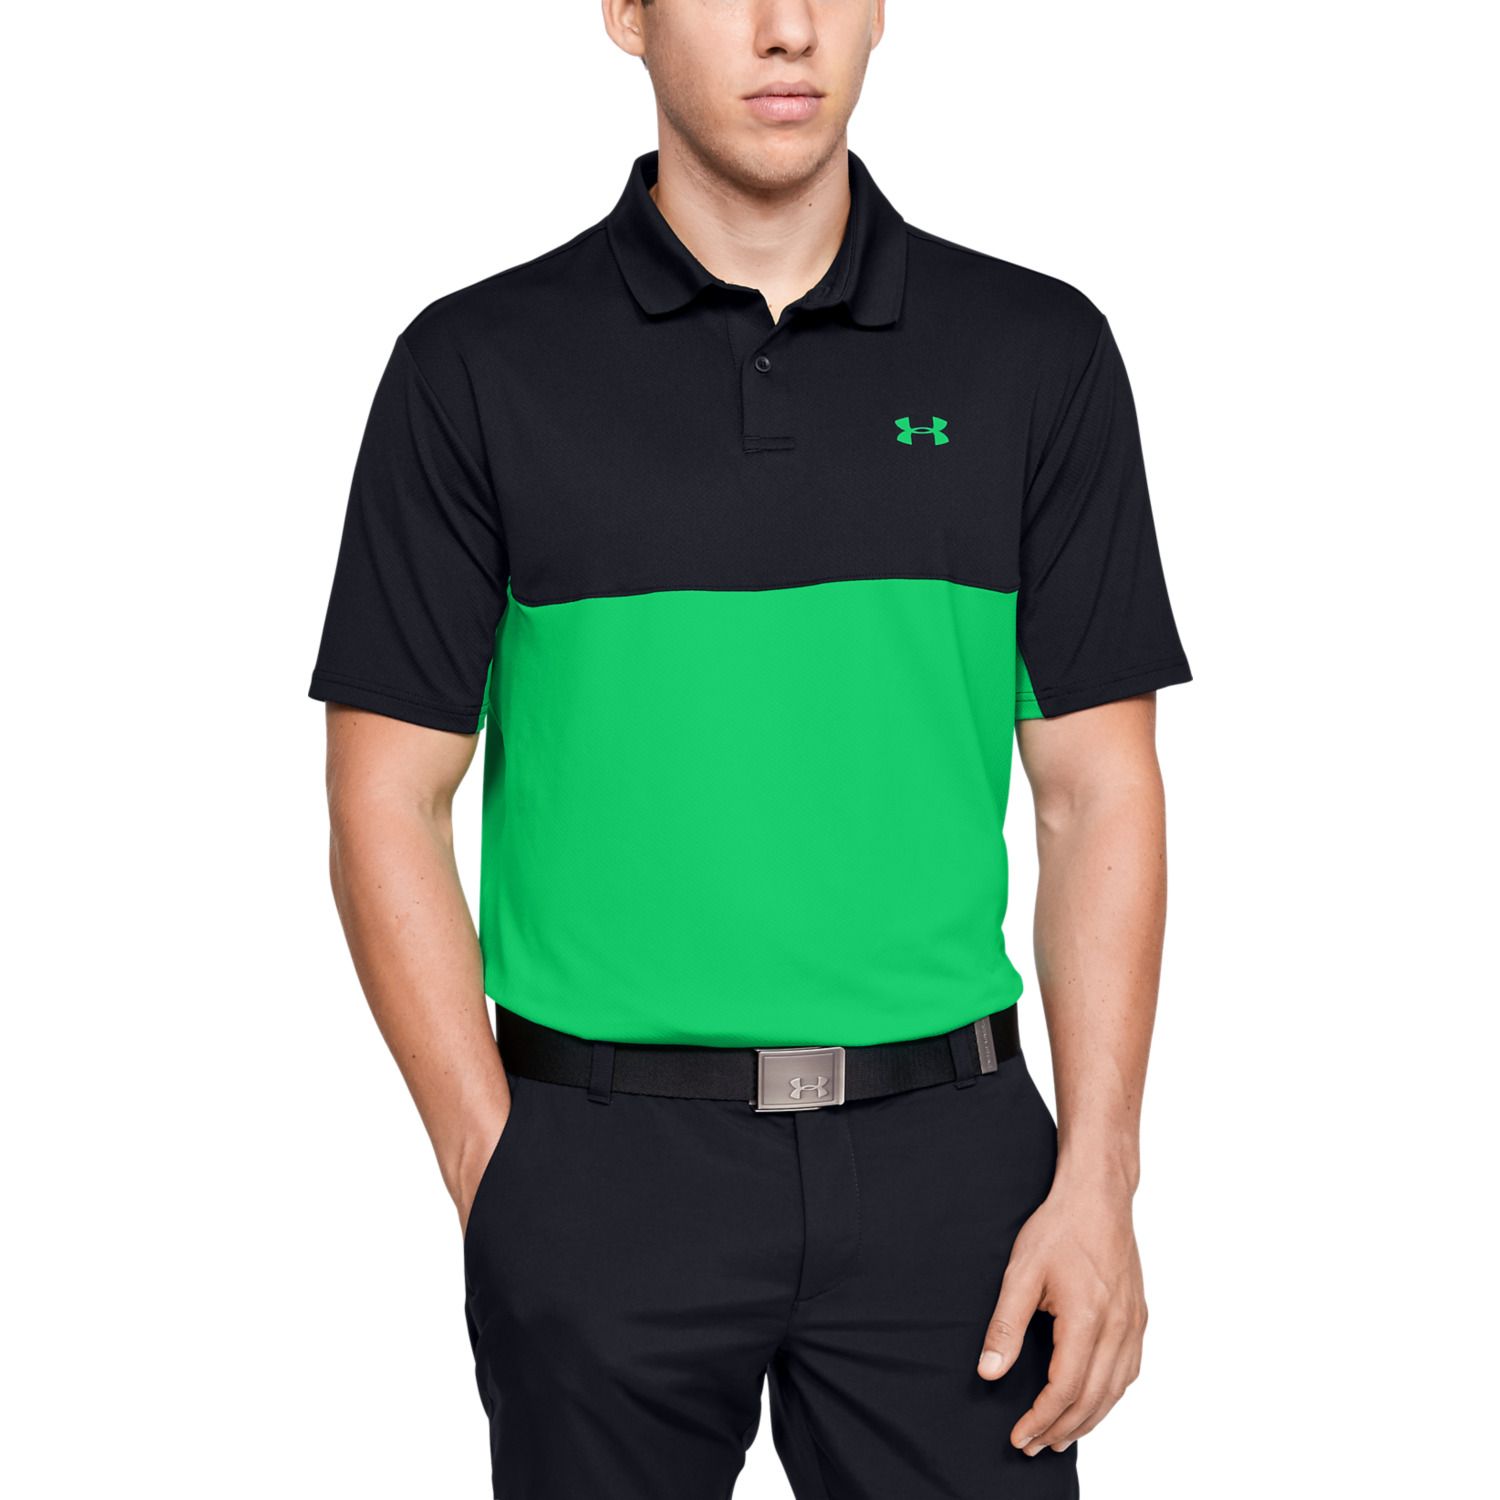 green under armour golf shirt